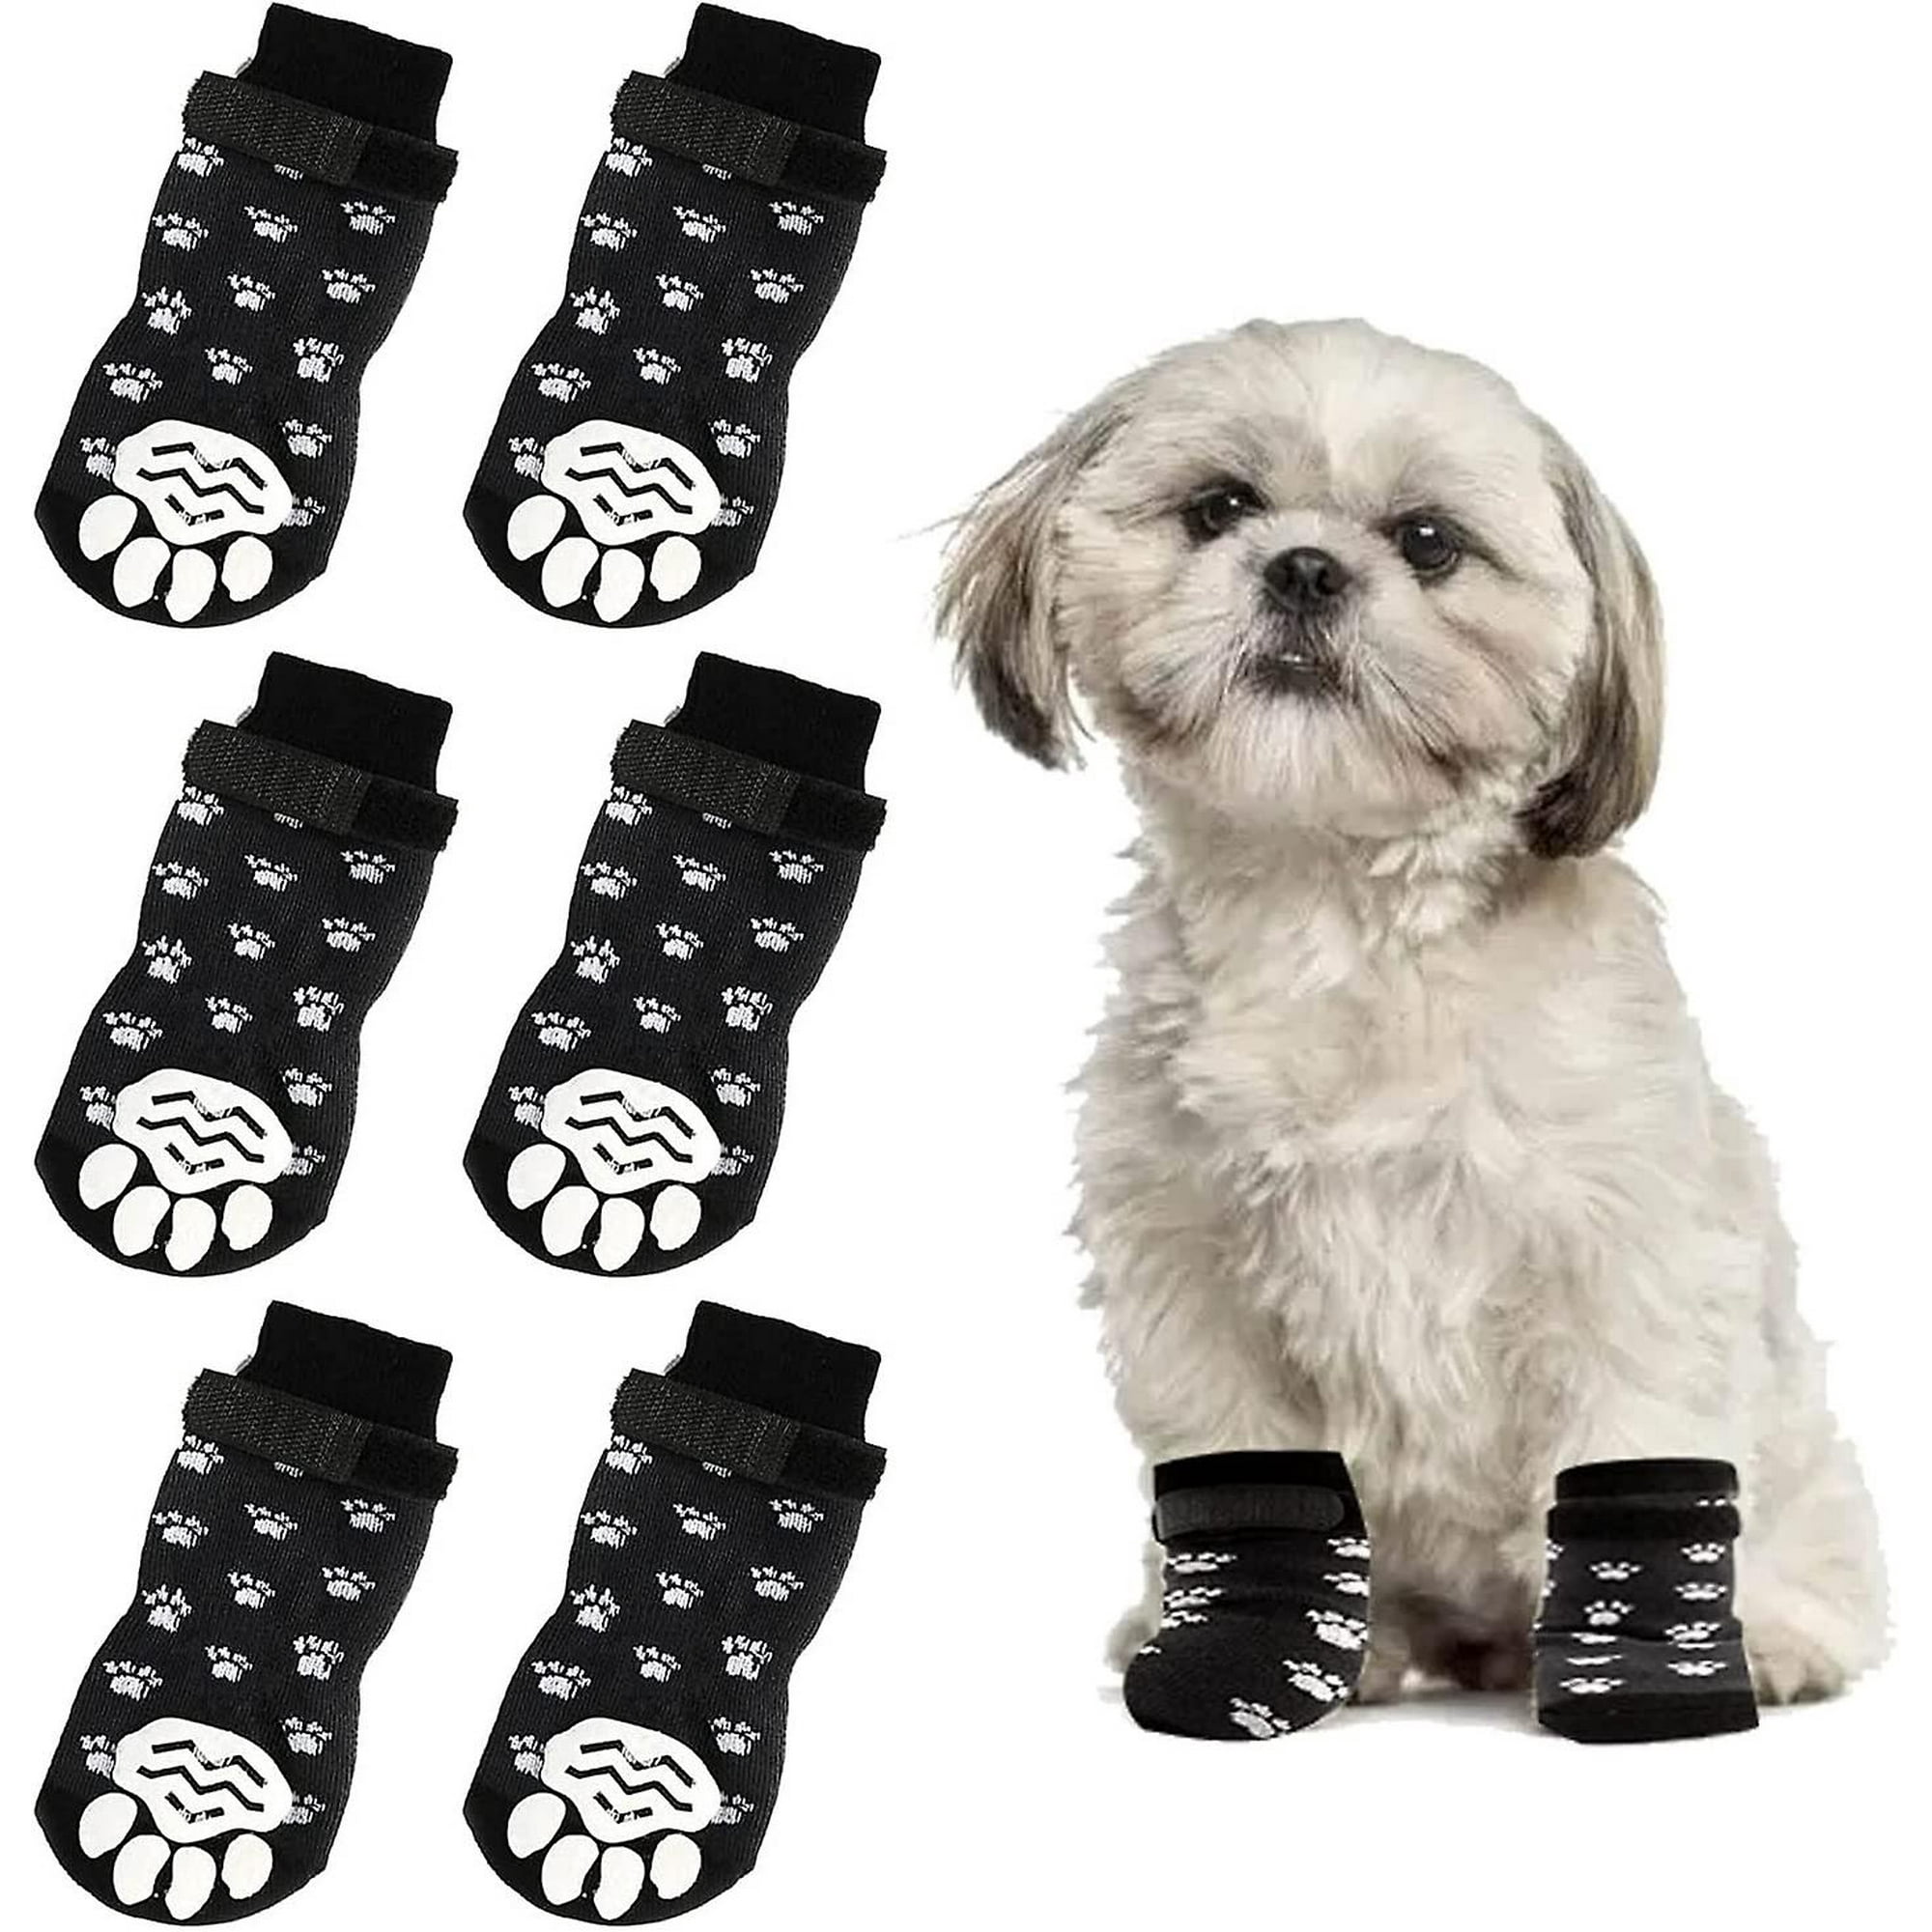 Calcetines para perros Calcetines antideslizantes para mascotas con  refuerzo de goma Calcetines tejidos para perros con